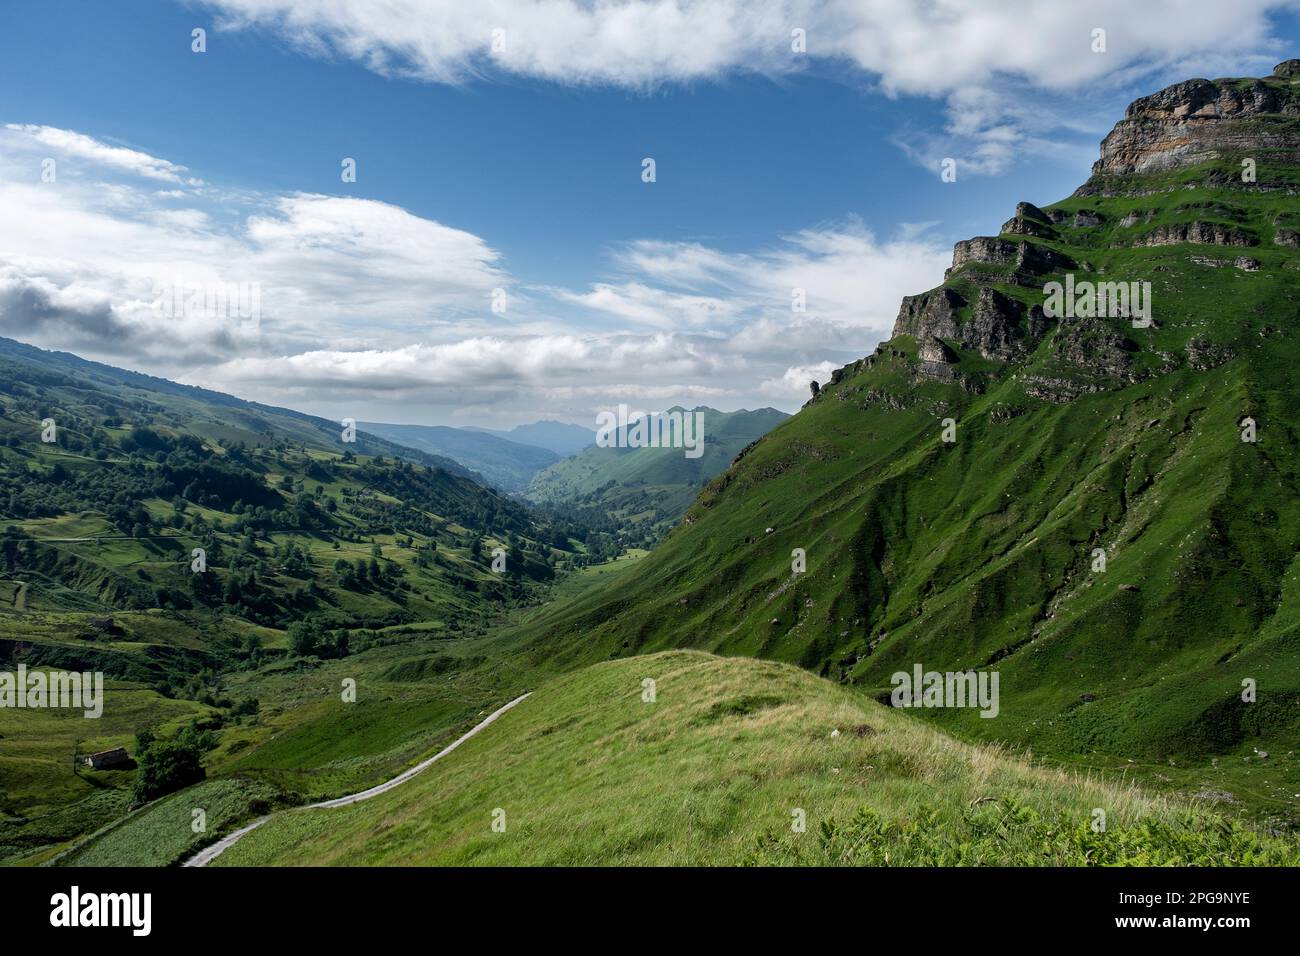 Belle vue sur la vallée verdoyante dans les montagnes, vallée de Miera, Valles Pasiegos, Cantabrie, Espagne Banque D'Images